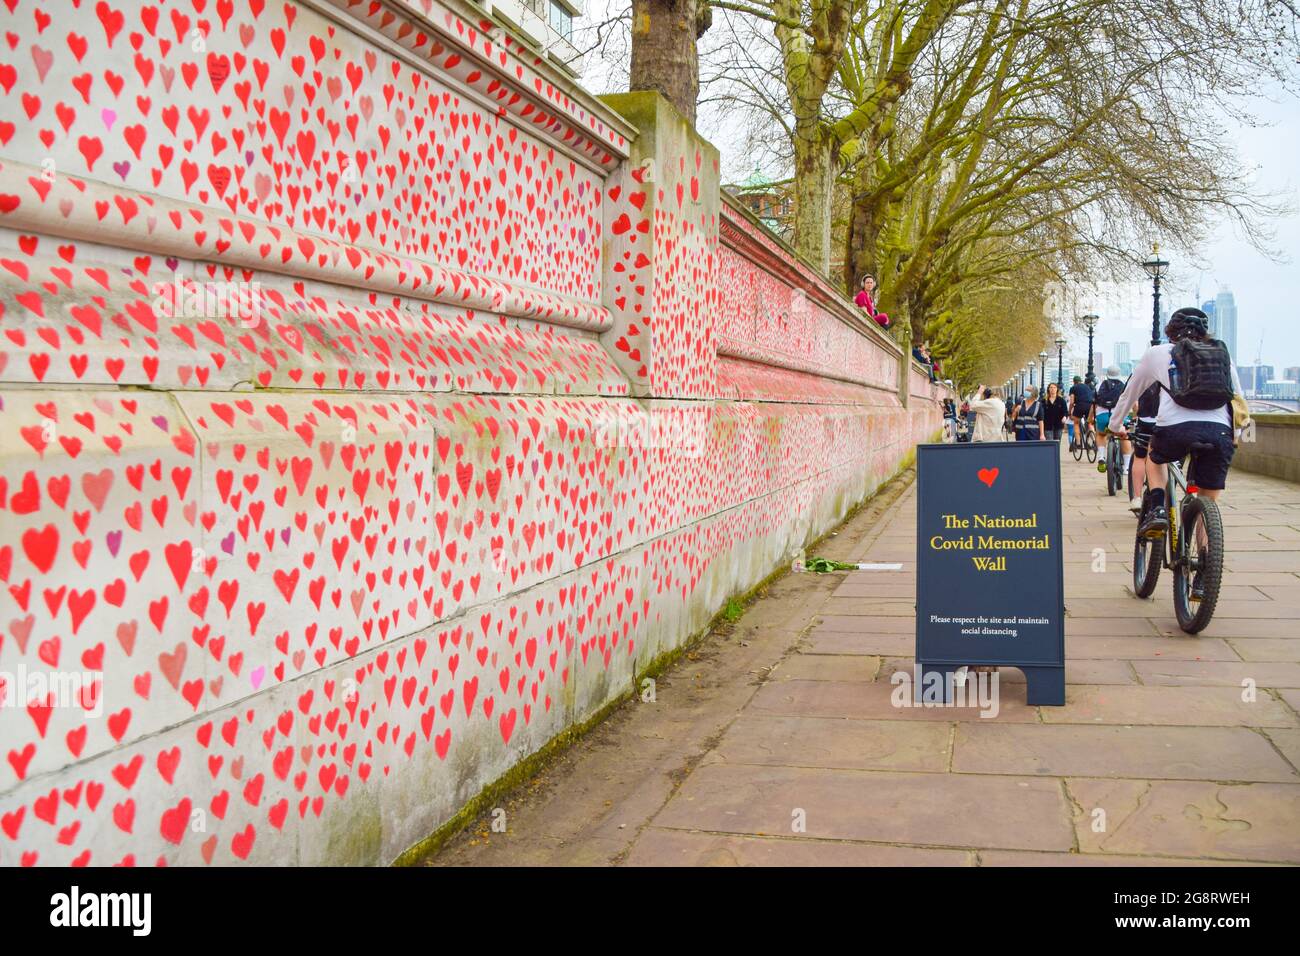 Cuori rossi sul National Covid Memorial Wall. Quasi 150,000 cuori sono stati dipinti da volontari, uno per ogni vittima Covid-19 nel Regno Unito fino ad oggi, sul muro fuori St Thomas' Hospital di fronte al Parlamento. Londra, Regno Unito marzo 2021. Foto Stock